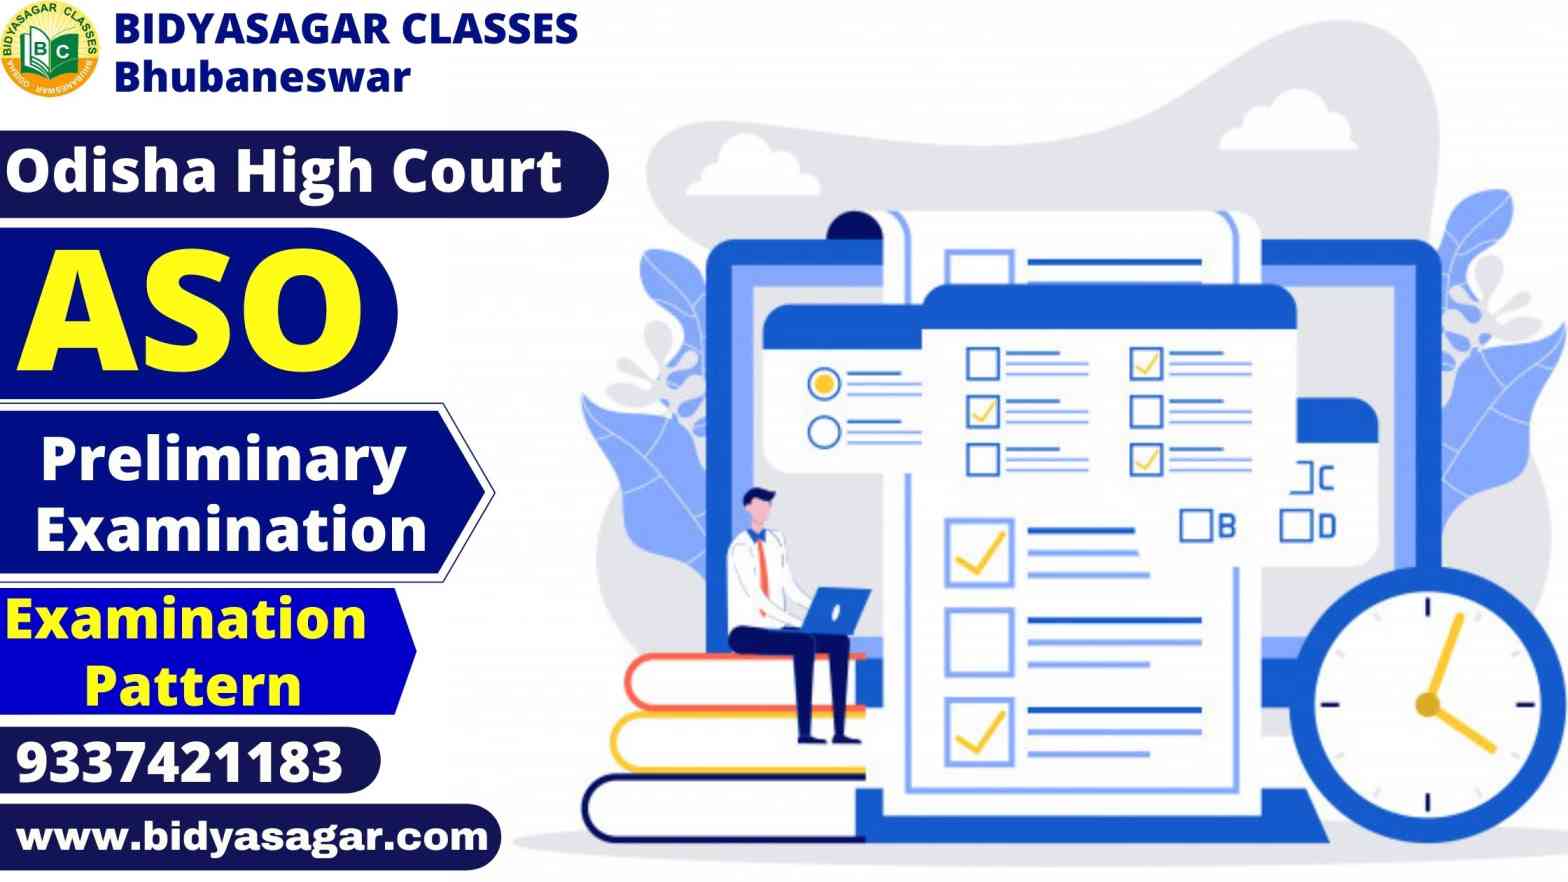 Odisha High Court ASO Preliminary Examination Exam Pattern